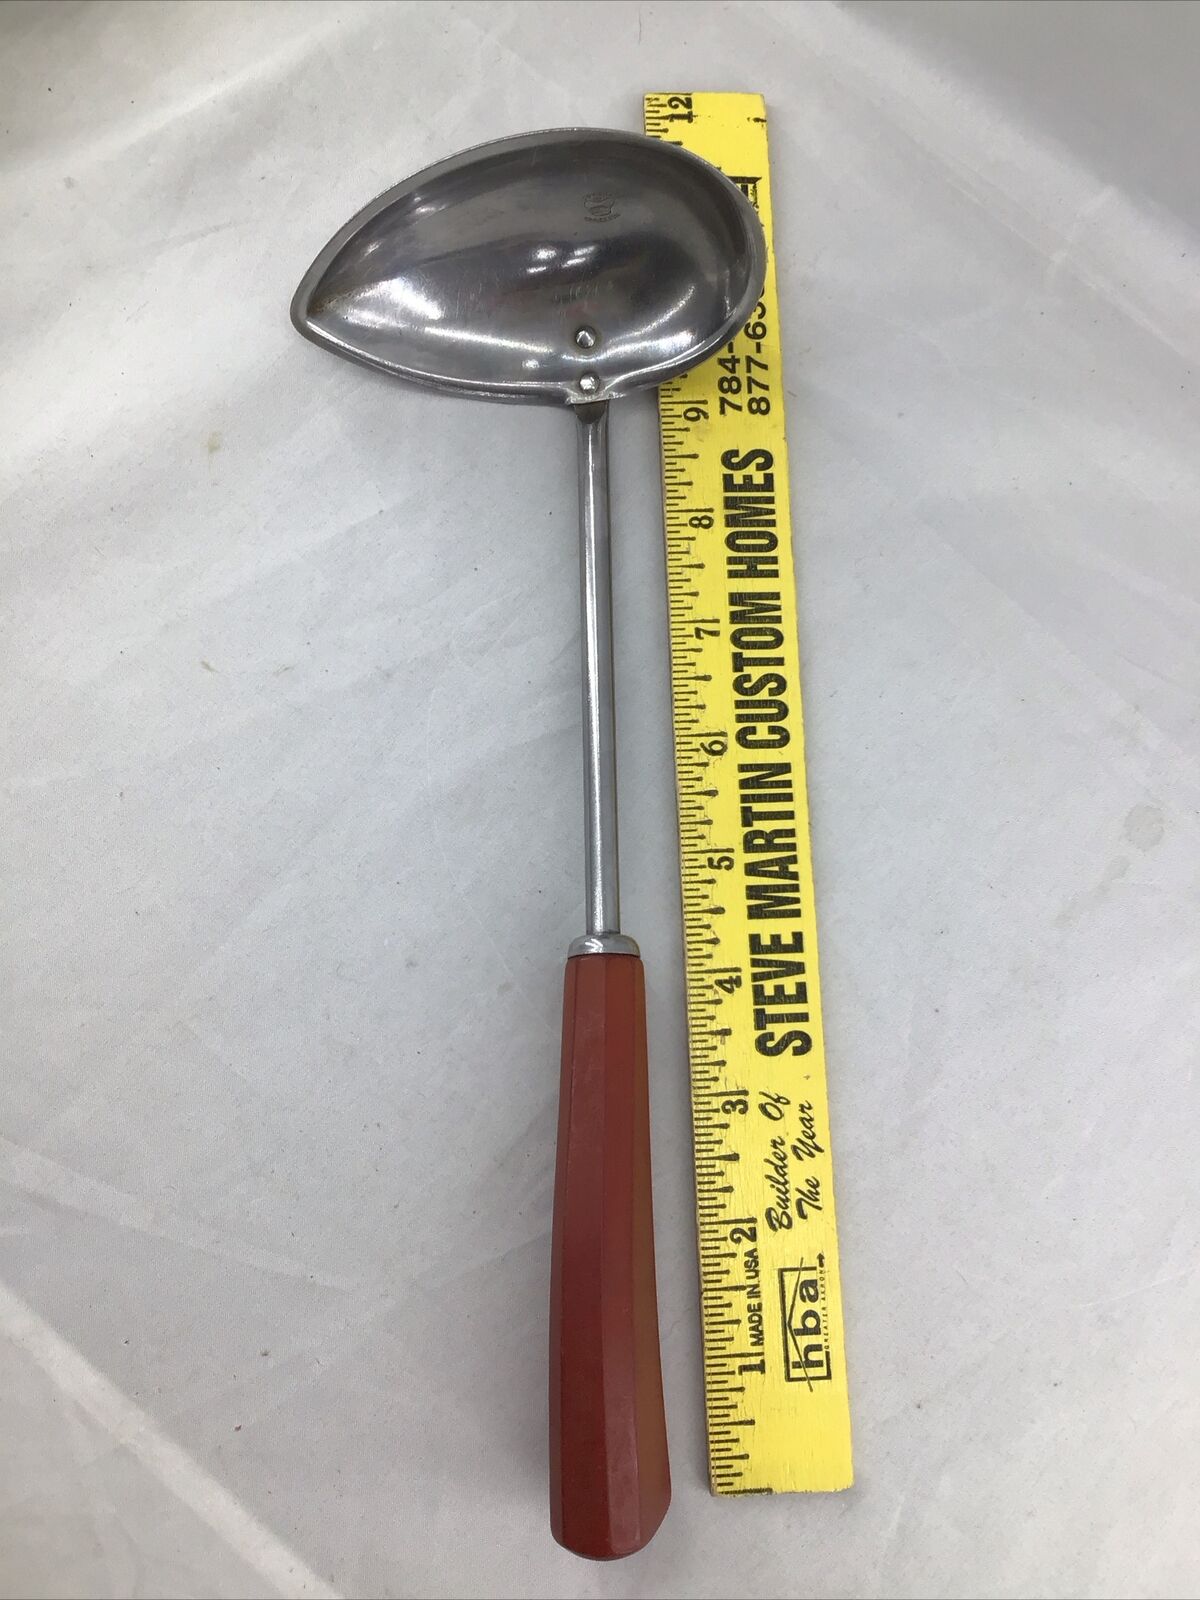 Vintage Corona Stainless Steel Teardrop Ladle With Red Bakelite Handle